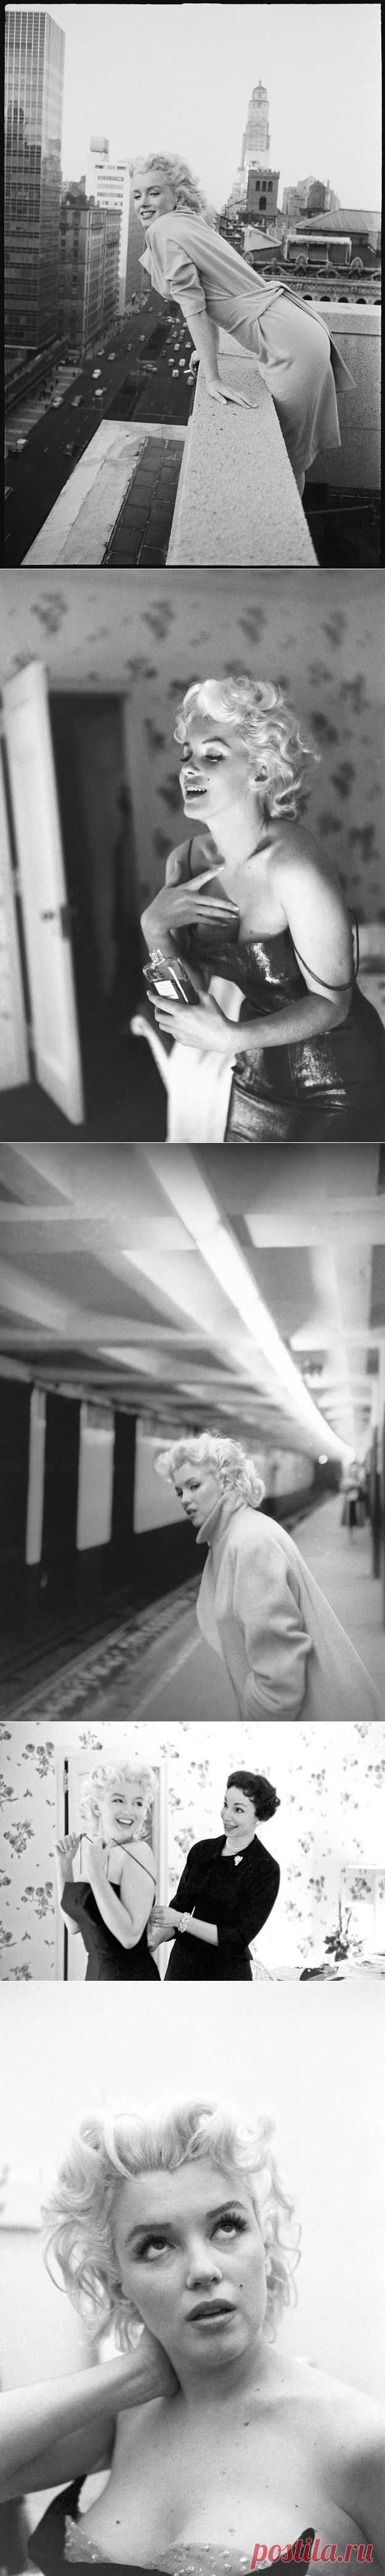 Редкие фотографии Мерлин Монро в Нью-Йорке.